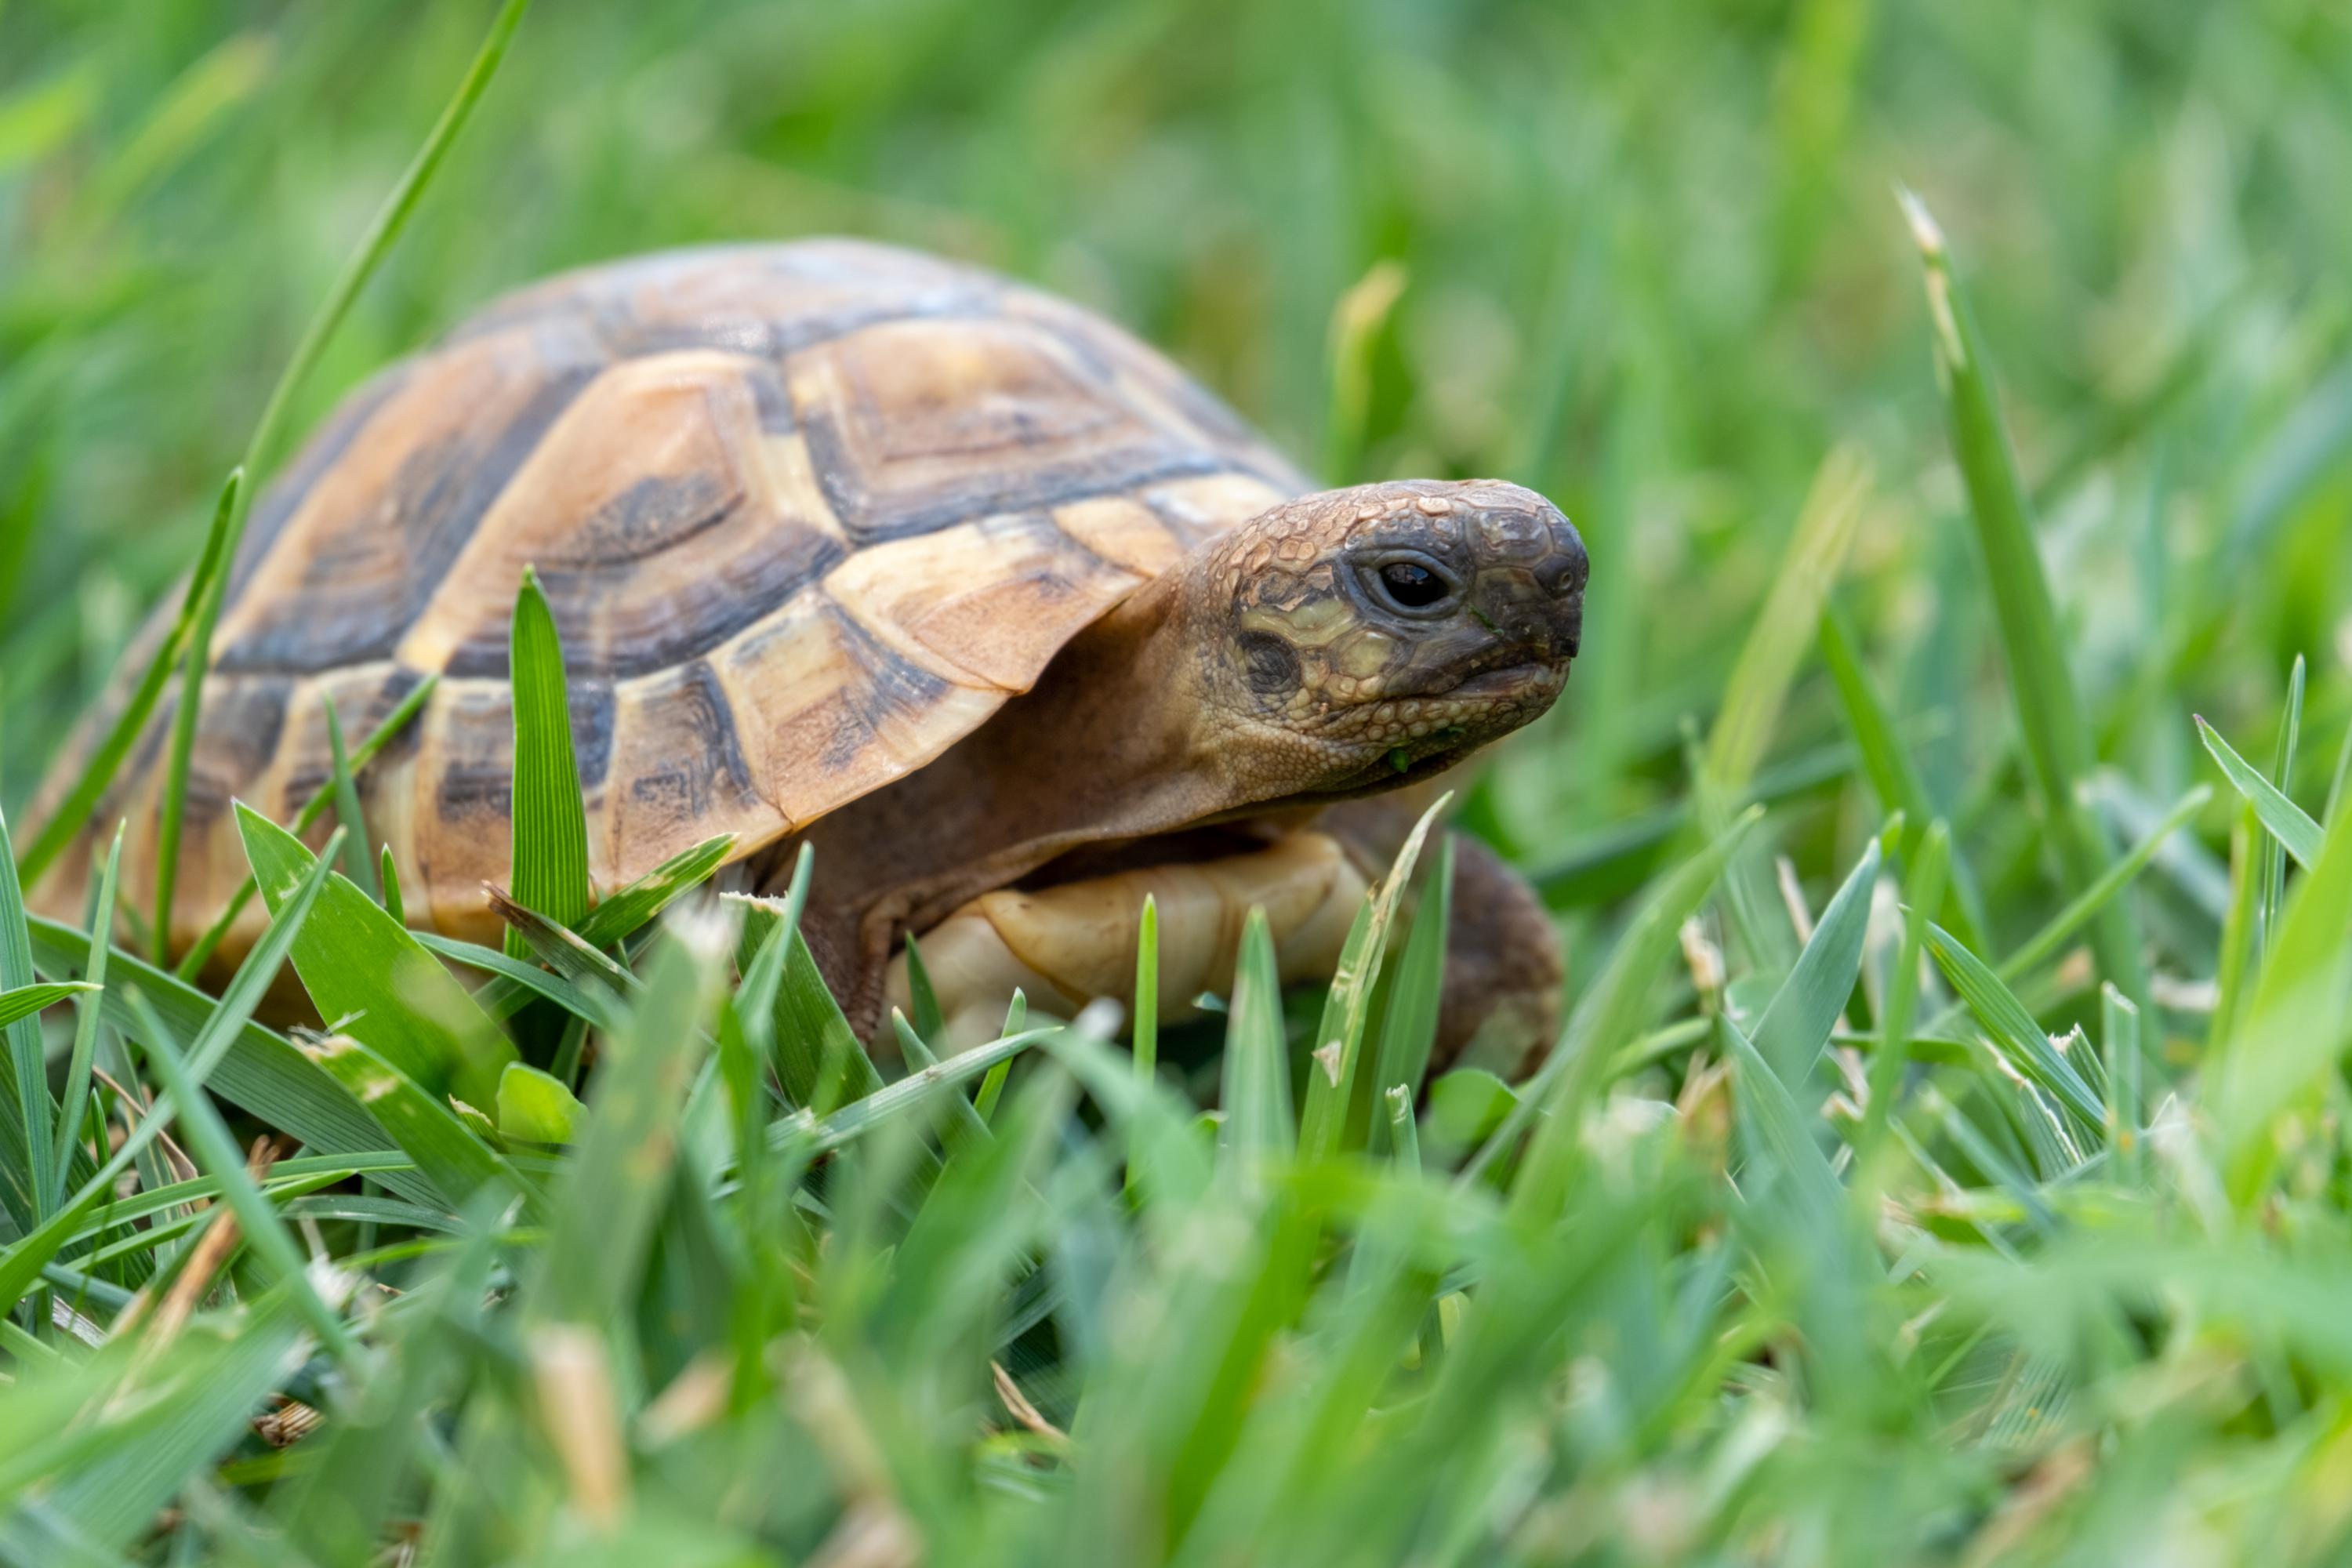 Causes of algae growth on turtle shells